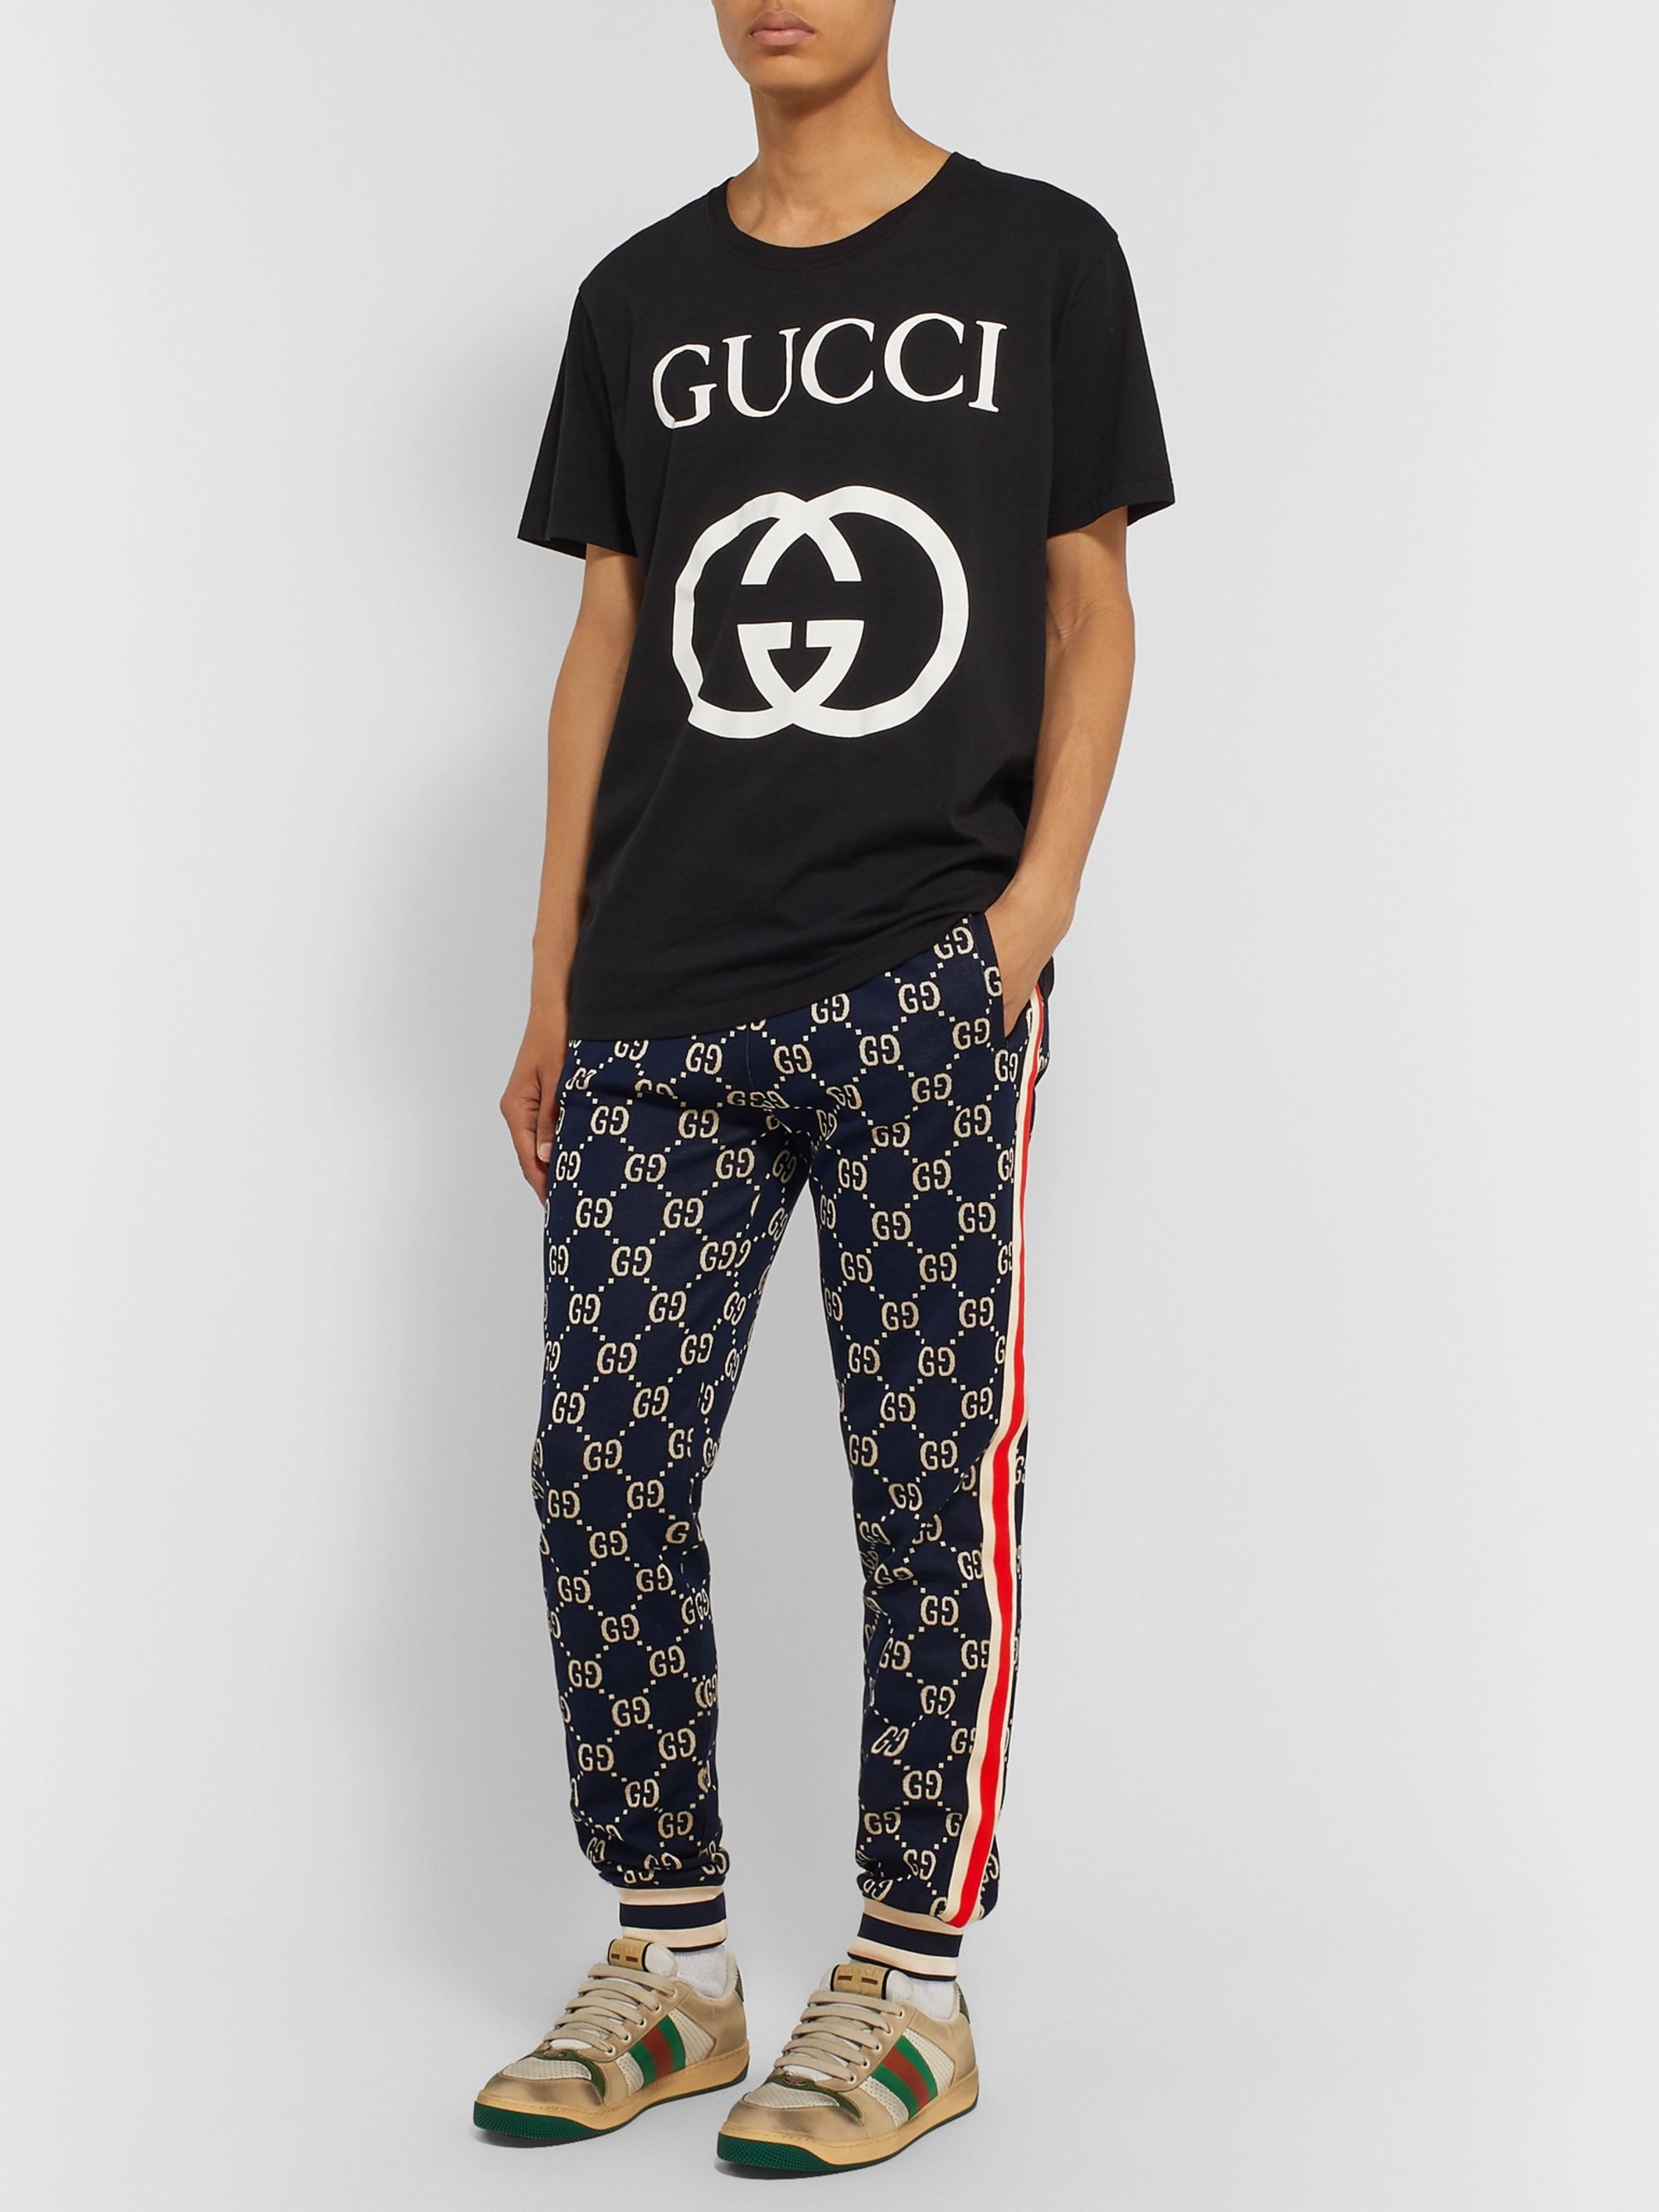 gucci shirt and pants